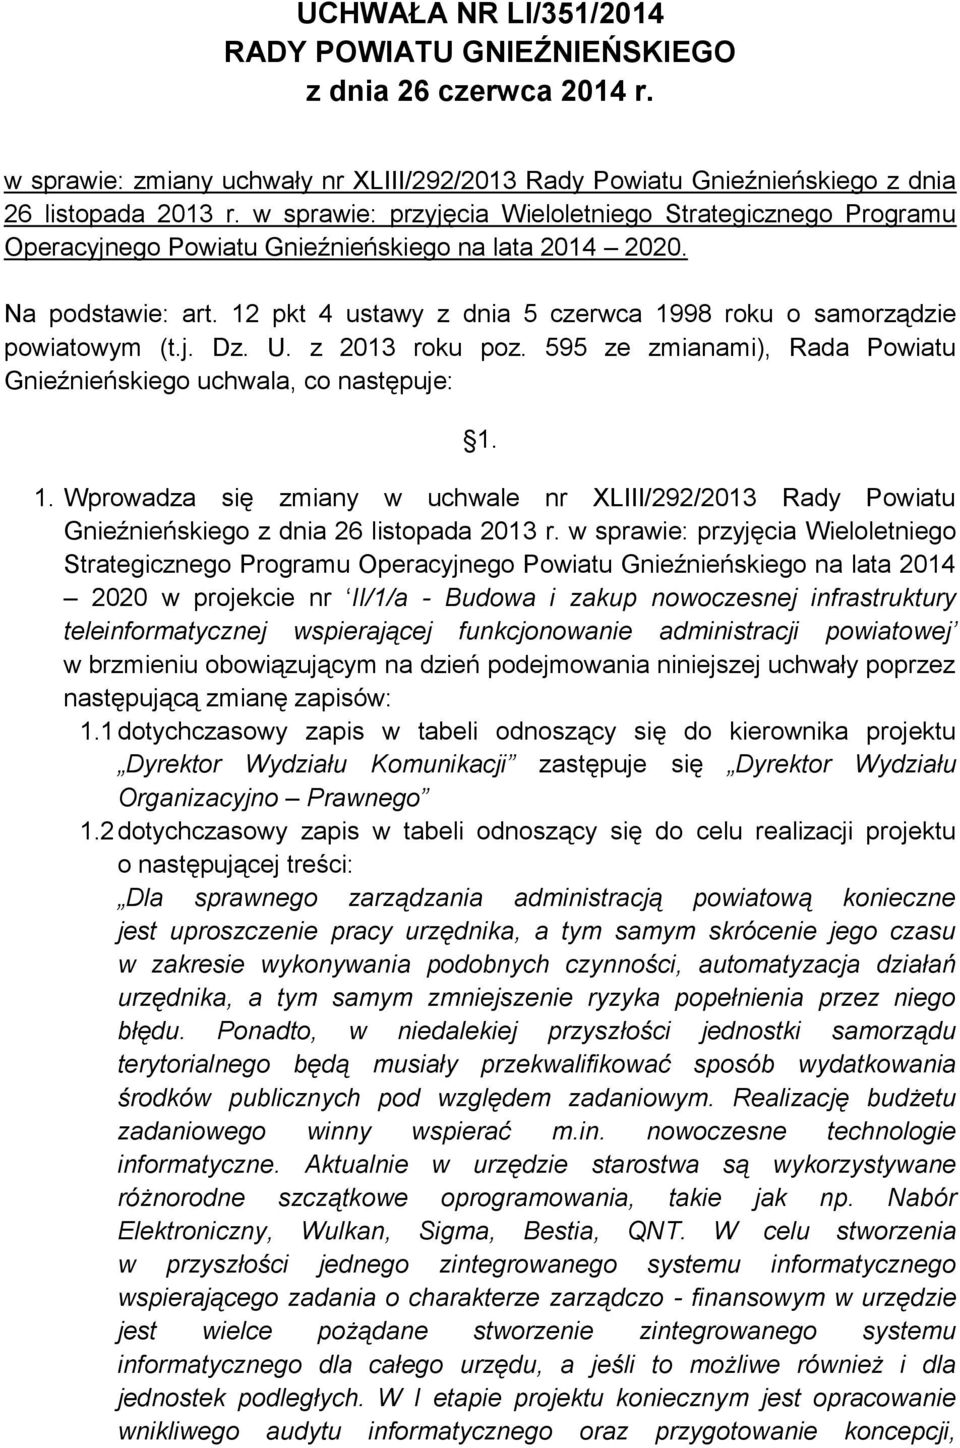 12 pkt 4 ustawy z dnia 5 czerwca 1998 roku o samorządzie powiatowym (t.j. Dz. U. z 2013 roku poz. 595 ze zmianami), Rada Powiatu Gnieźnieńskiego uchwala, co następuje: 1. 1. Wprowadza się zmiany w uchwale nr XLIII/292/2013 Rady Powiatu Gnieźnieńskiego z dnia 26 listopada 2013 r.